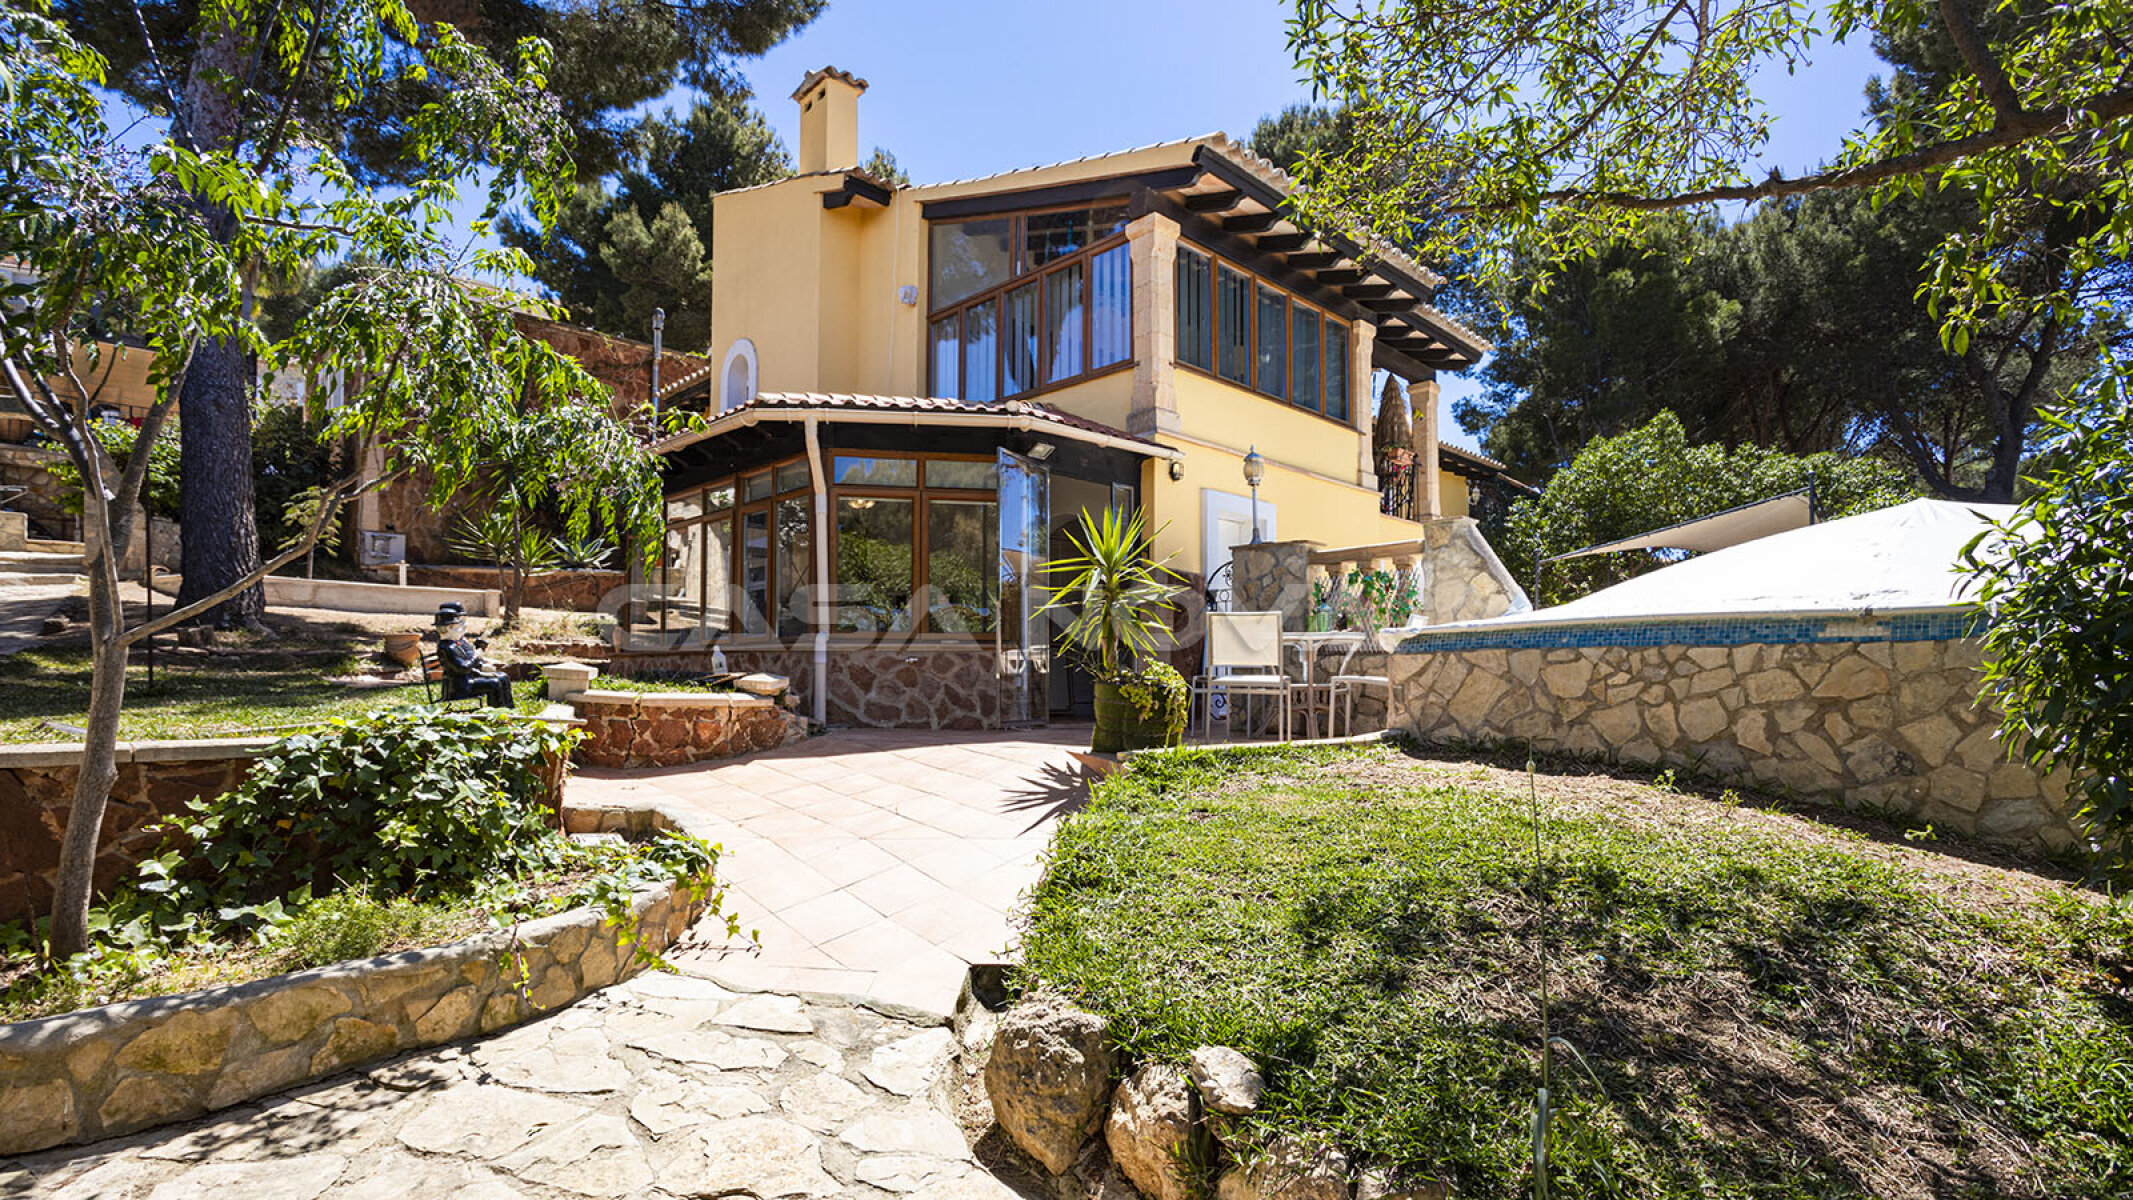 Villa mediterr�nea con elementos de piedra natural